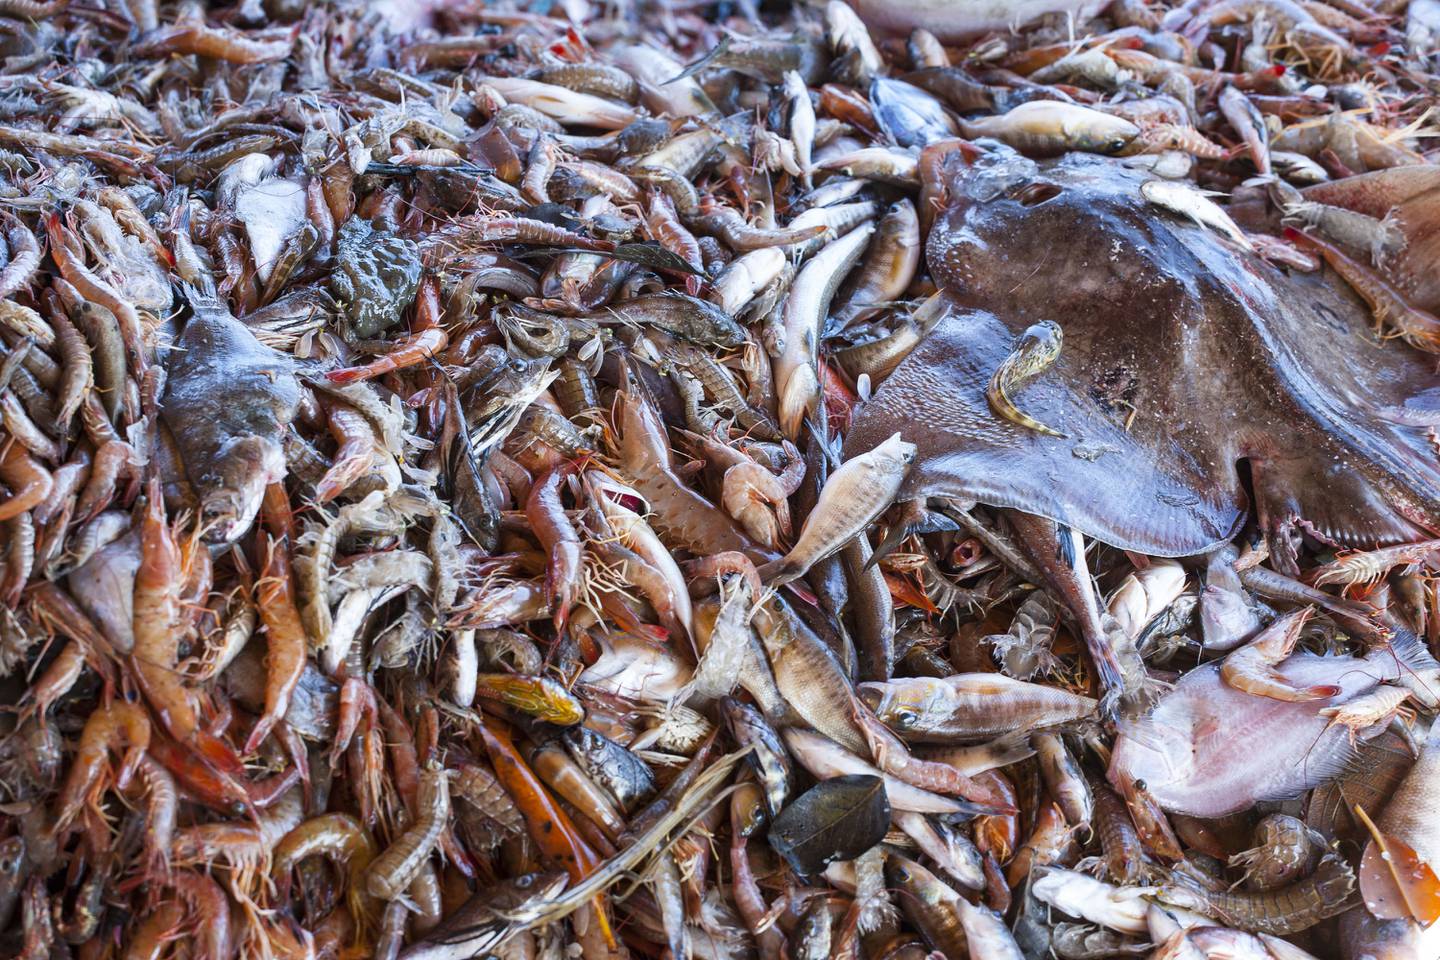 La pesca de arrastre, promovida en el estudio por Incopesca, ha generado críticas de sectores ambientalistas por el daño indirecto a otras especies marinas. Fotografía: Cortesía de MarViva.